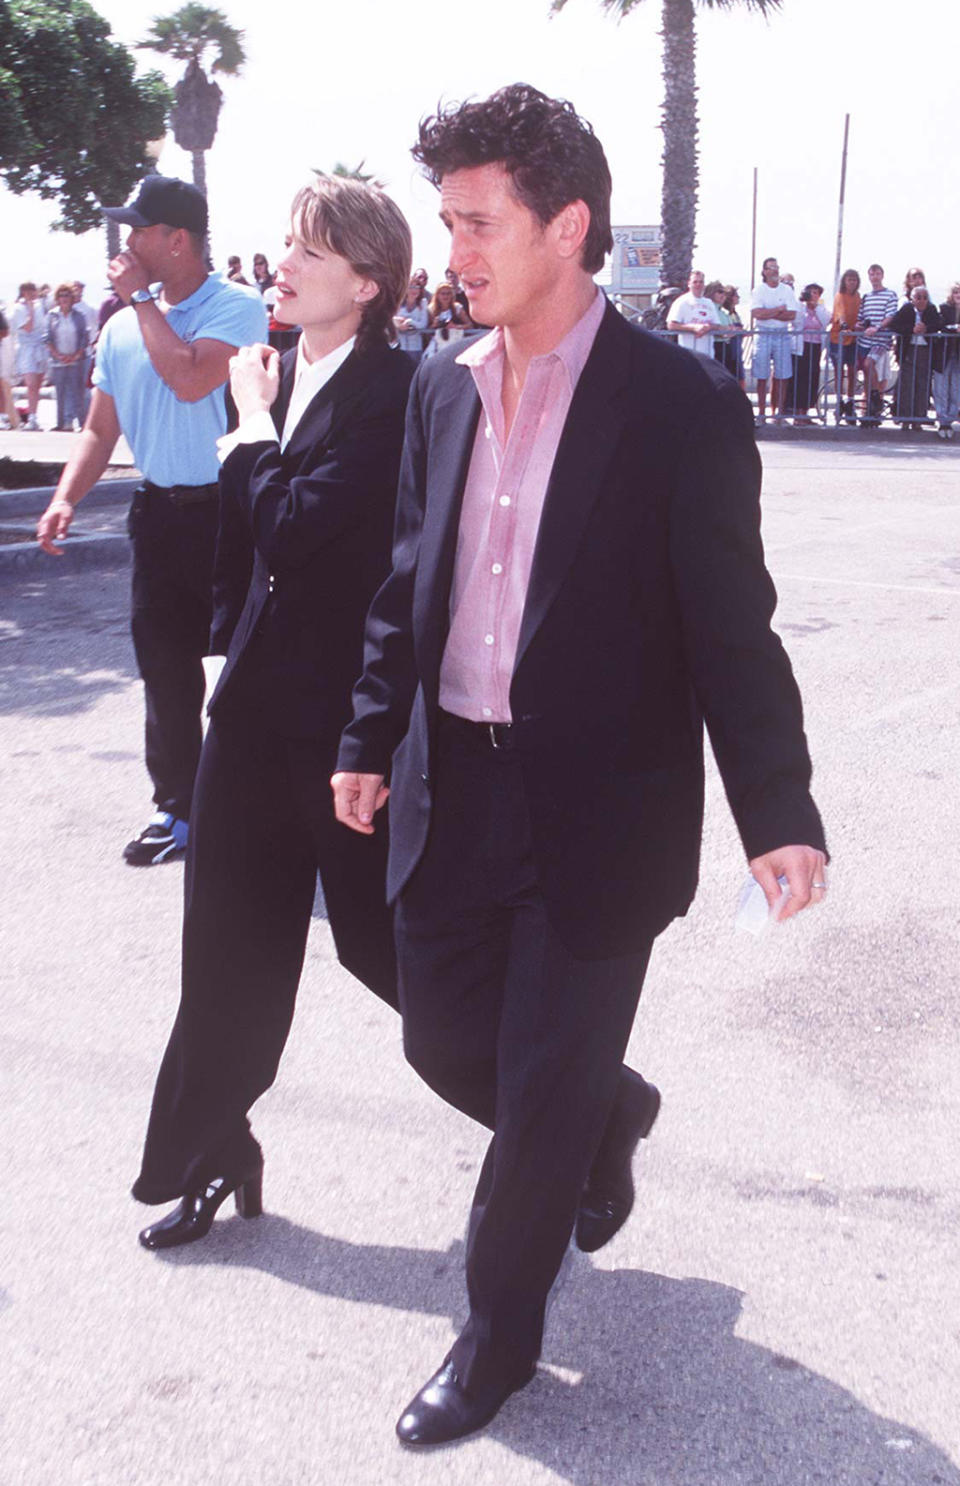 Robin Wright and Sean Penn